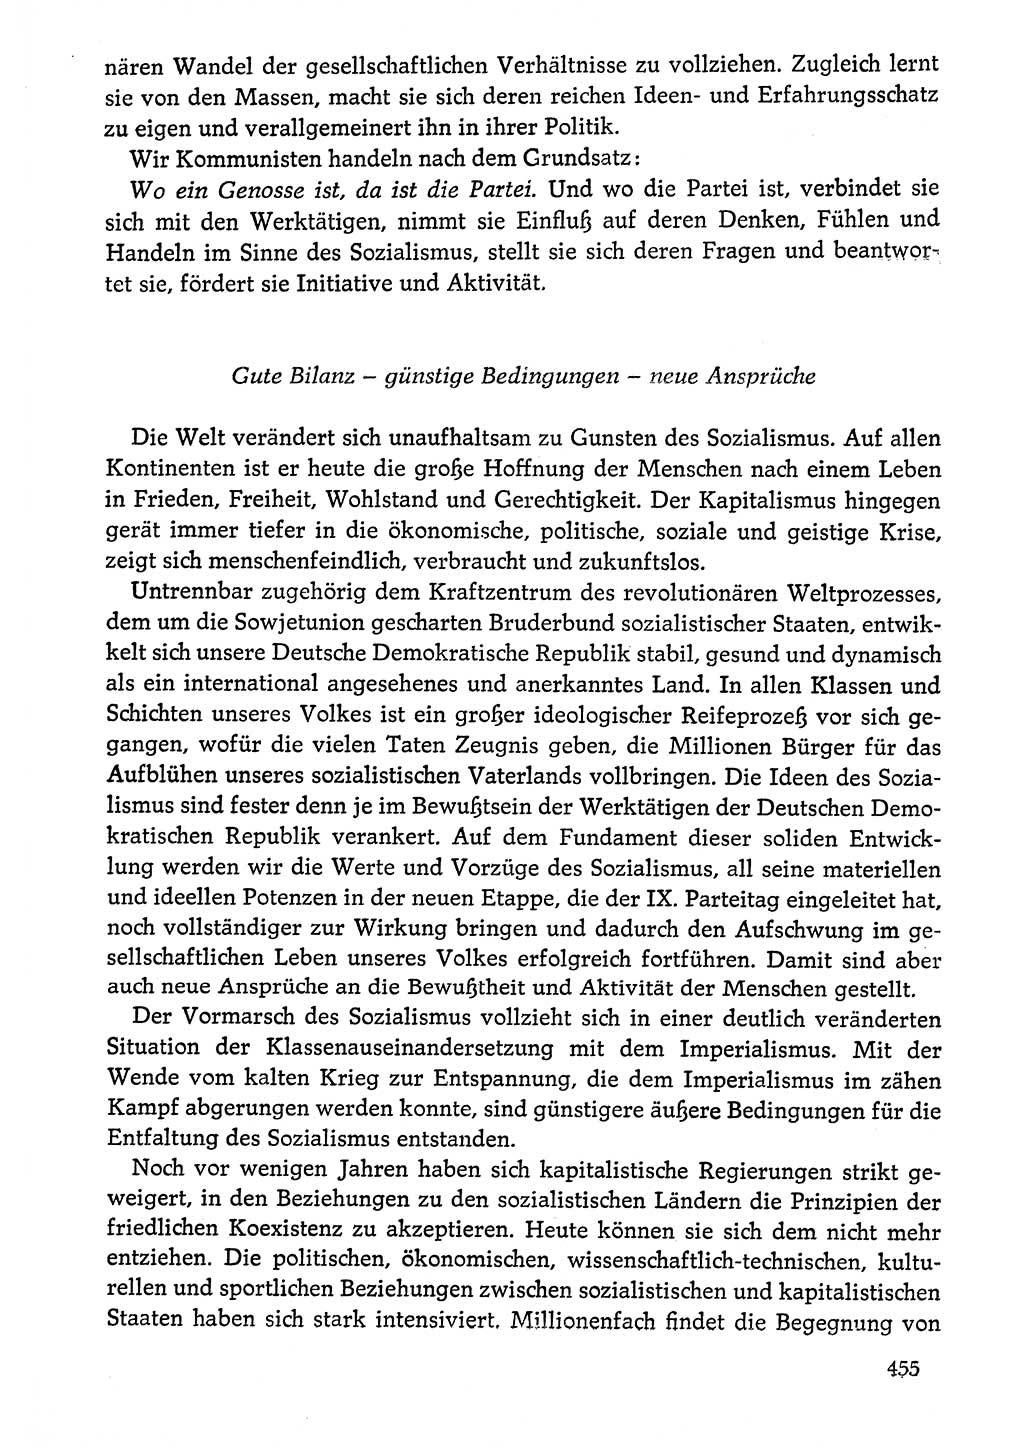 Dokumente der Sozialistischen Einheitspartei Deutschlands (SED) [Deutsche Demokratische Republik (DDR)] 1976-1977, Seite 455 (Dok. SED DDR 1976-1977, S. 455)